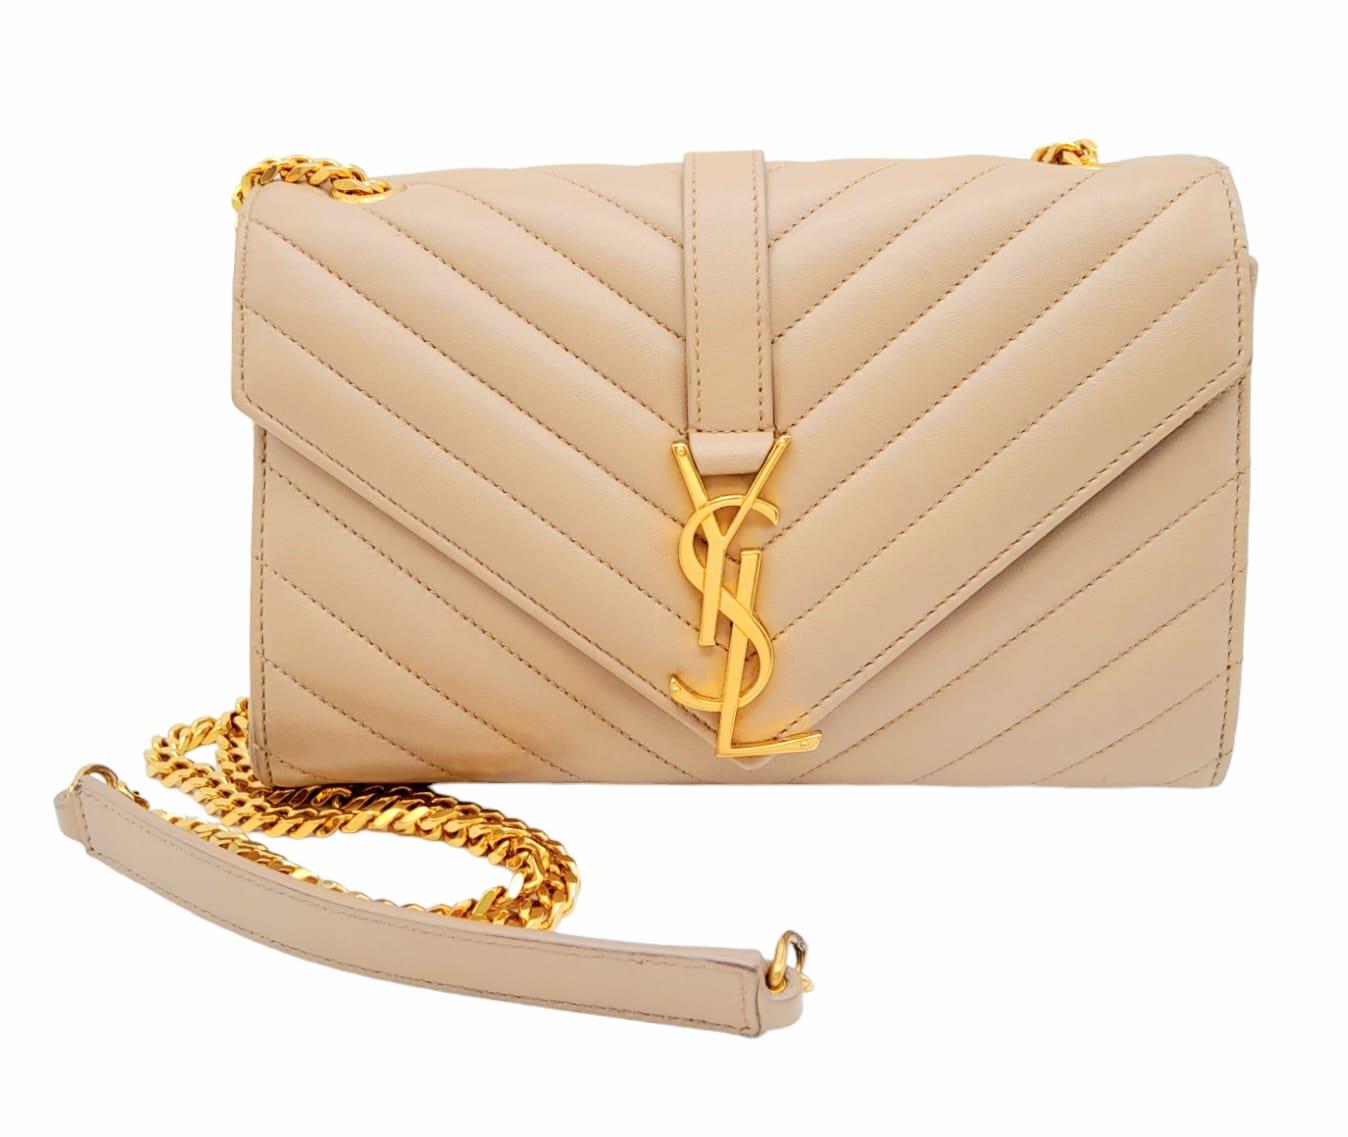 A Saint Laurent envelope shoulder bag, soft beige calfskin with gold hardware and strap, press